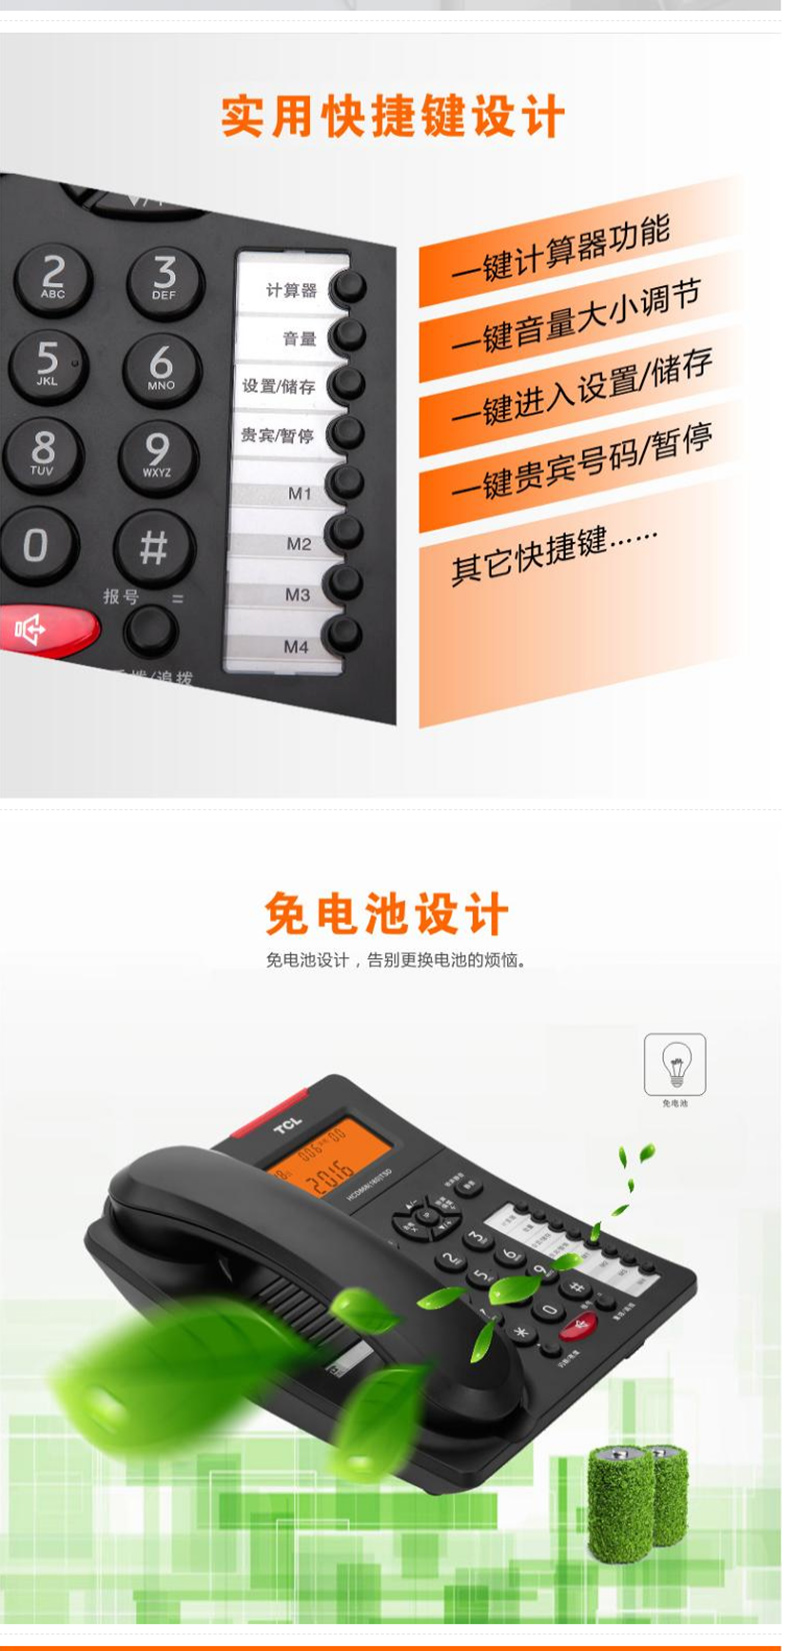 TCL 电话机座机 固定电话 办公家用 语音报号 来电显示 商务办公 HCD868(180)TSD 